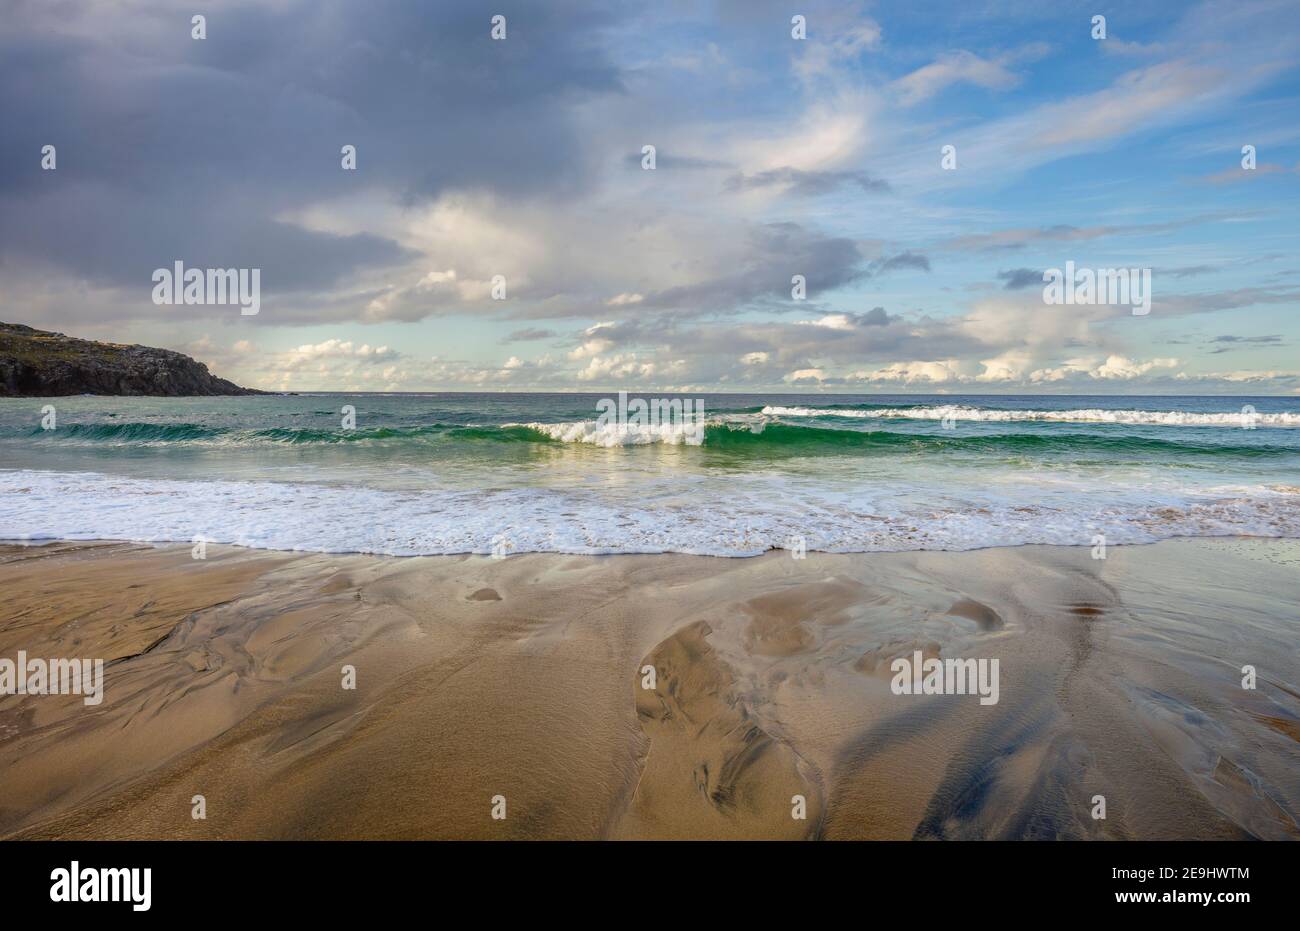 Isla de Lewis y Harris, Escocia: Olas rompiendo en las arenas de la playa de Dail Mor (Dalmore) en el lado norte de la isla de Lewis Foto de stock